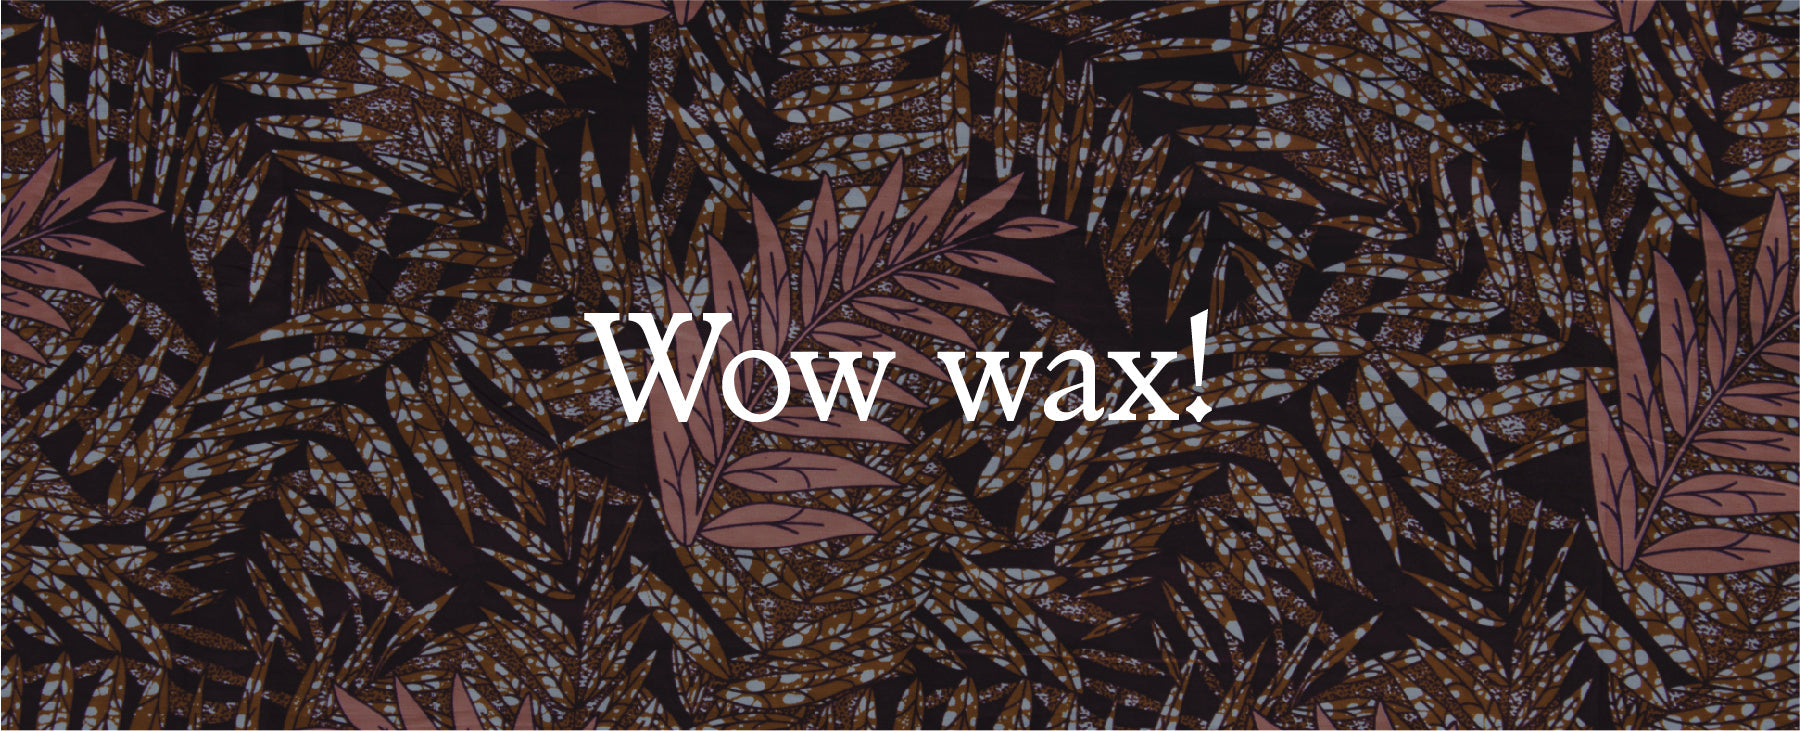 African wax fabric